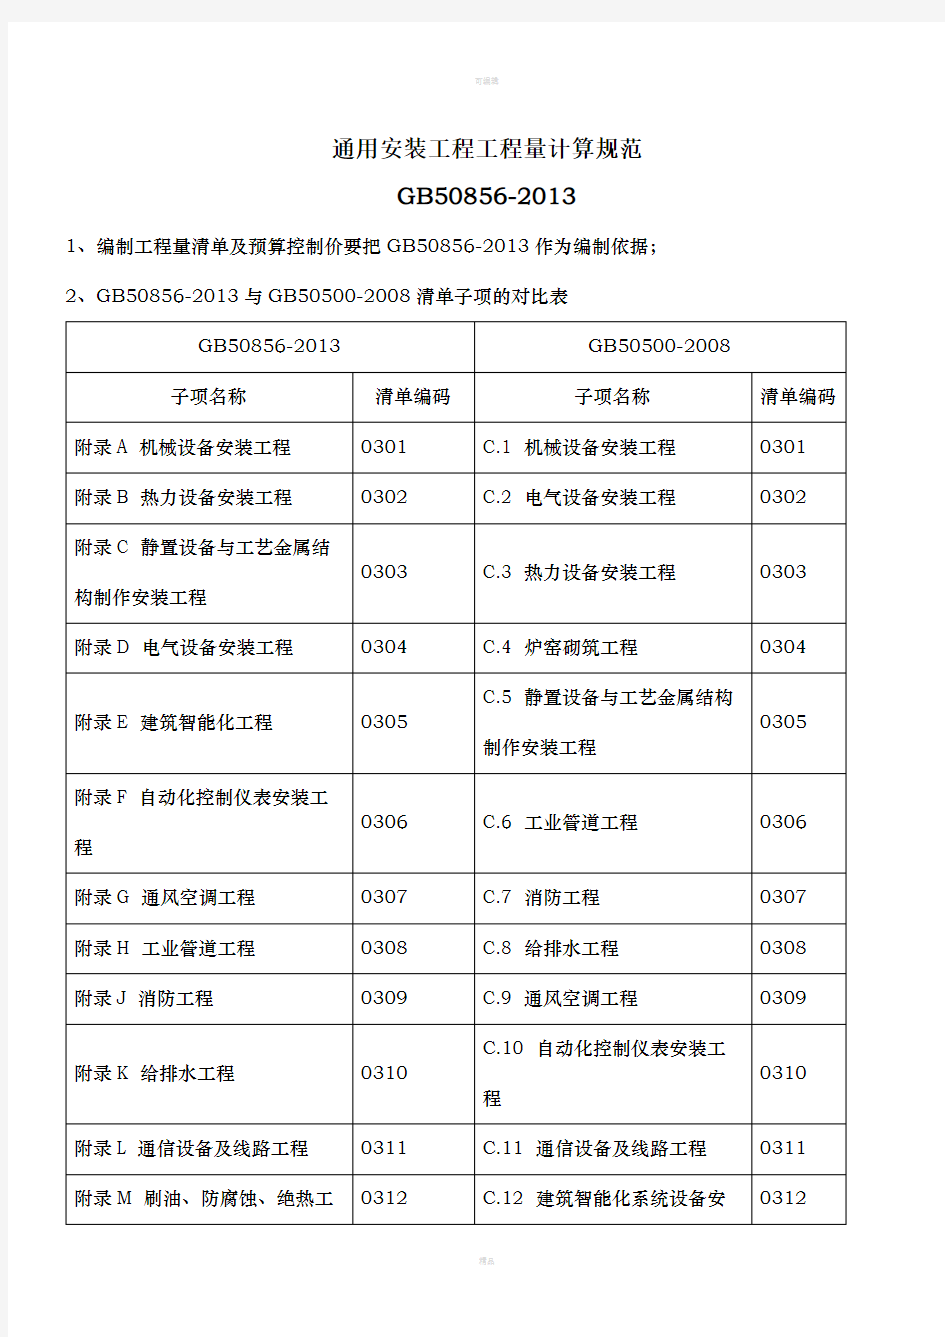 江苏省13清单规范与08清单规范安装部分区别